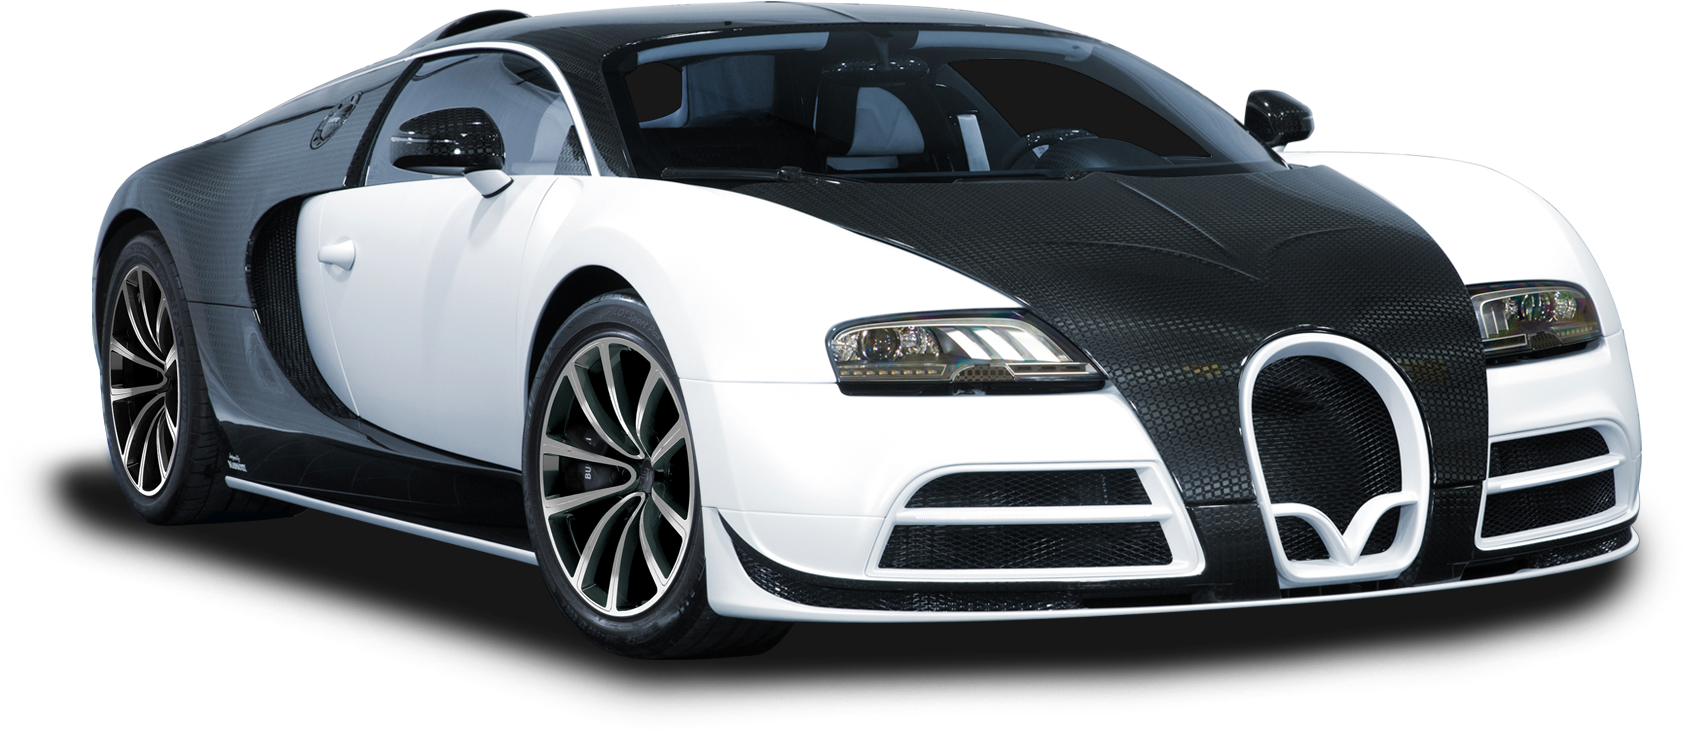 Bugatti Chiron PNG Image Background